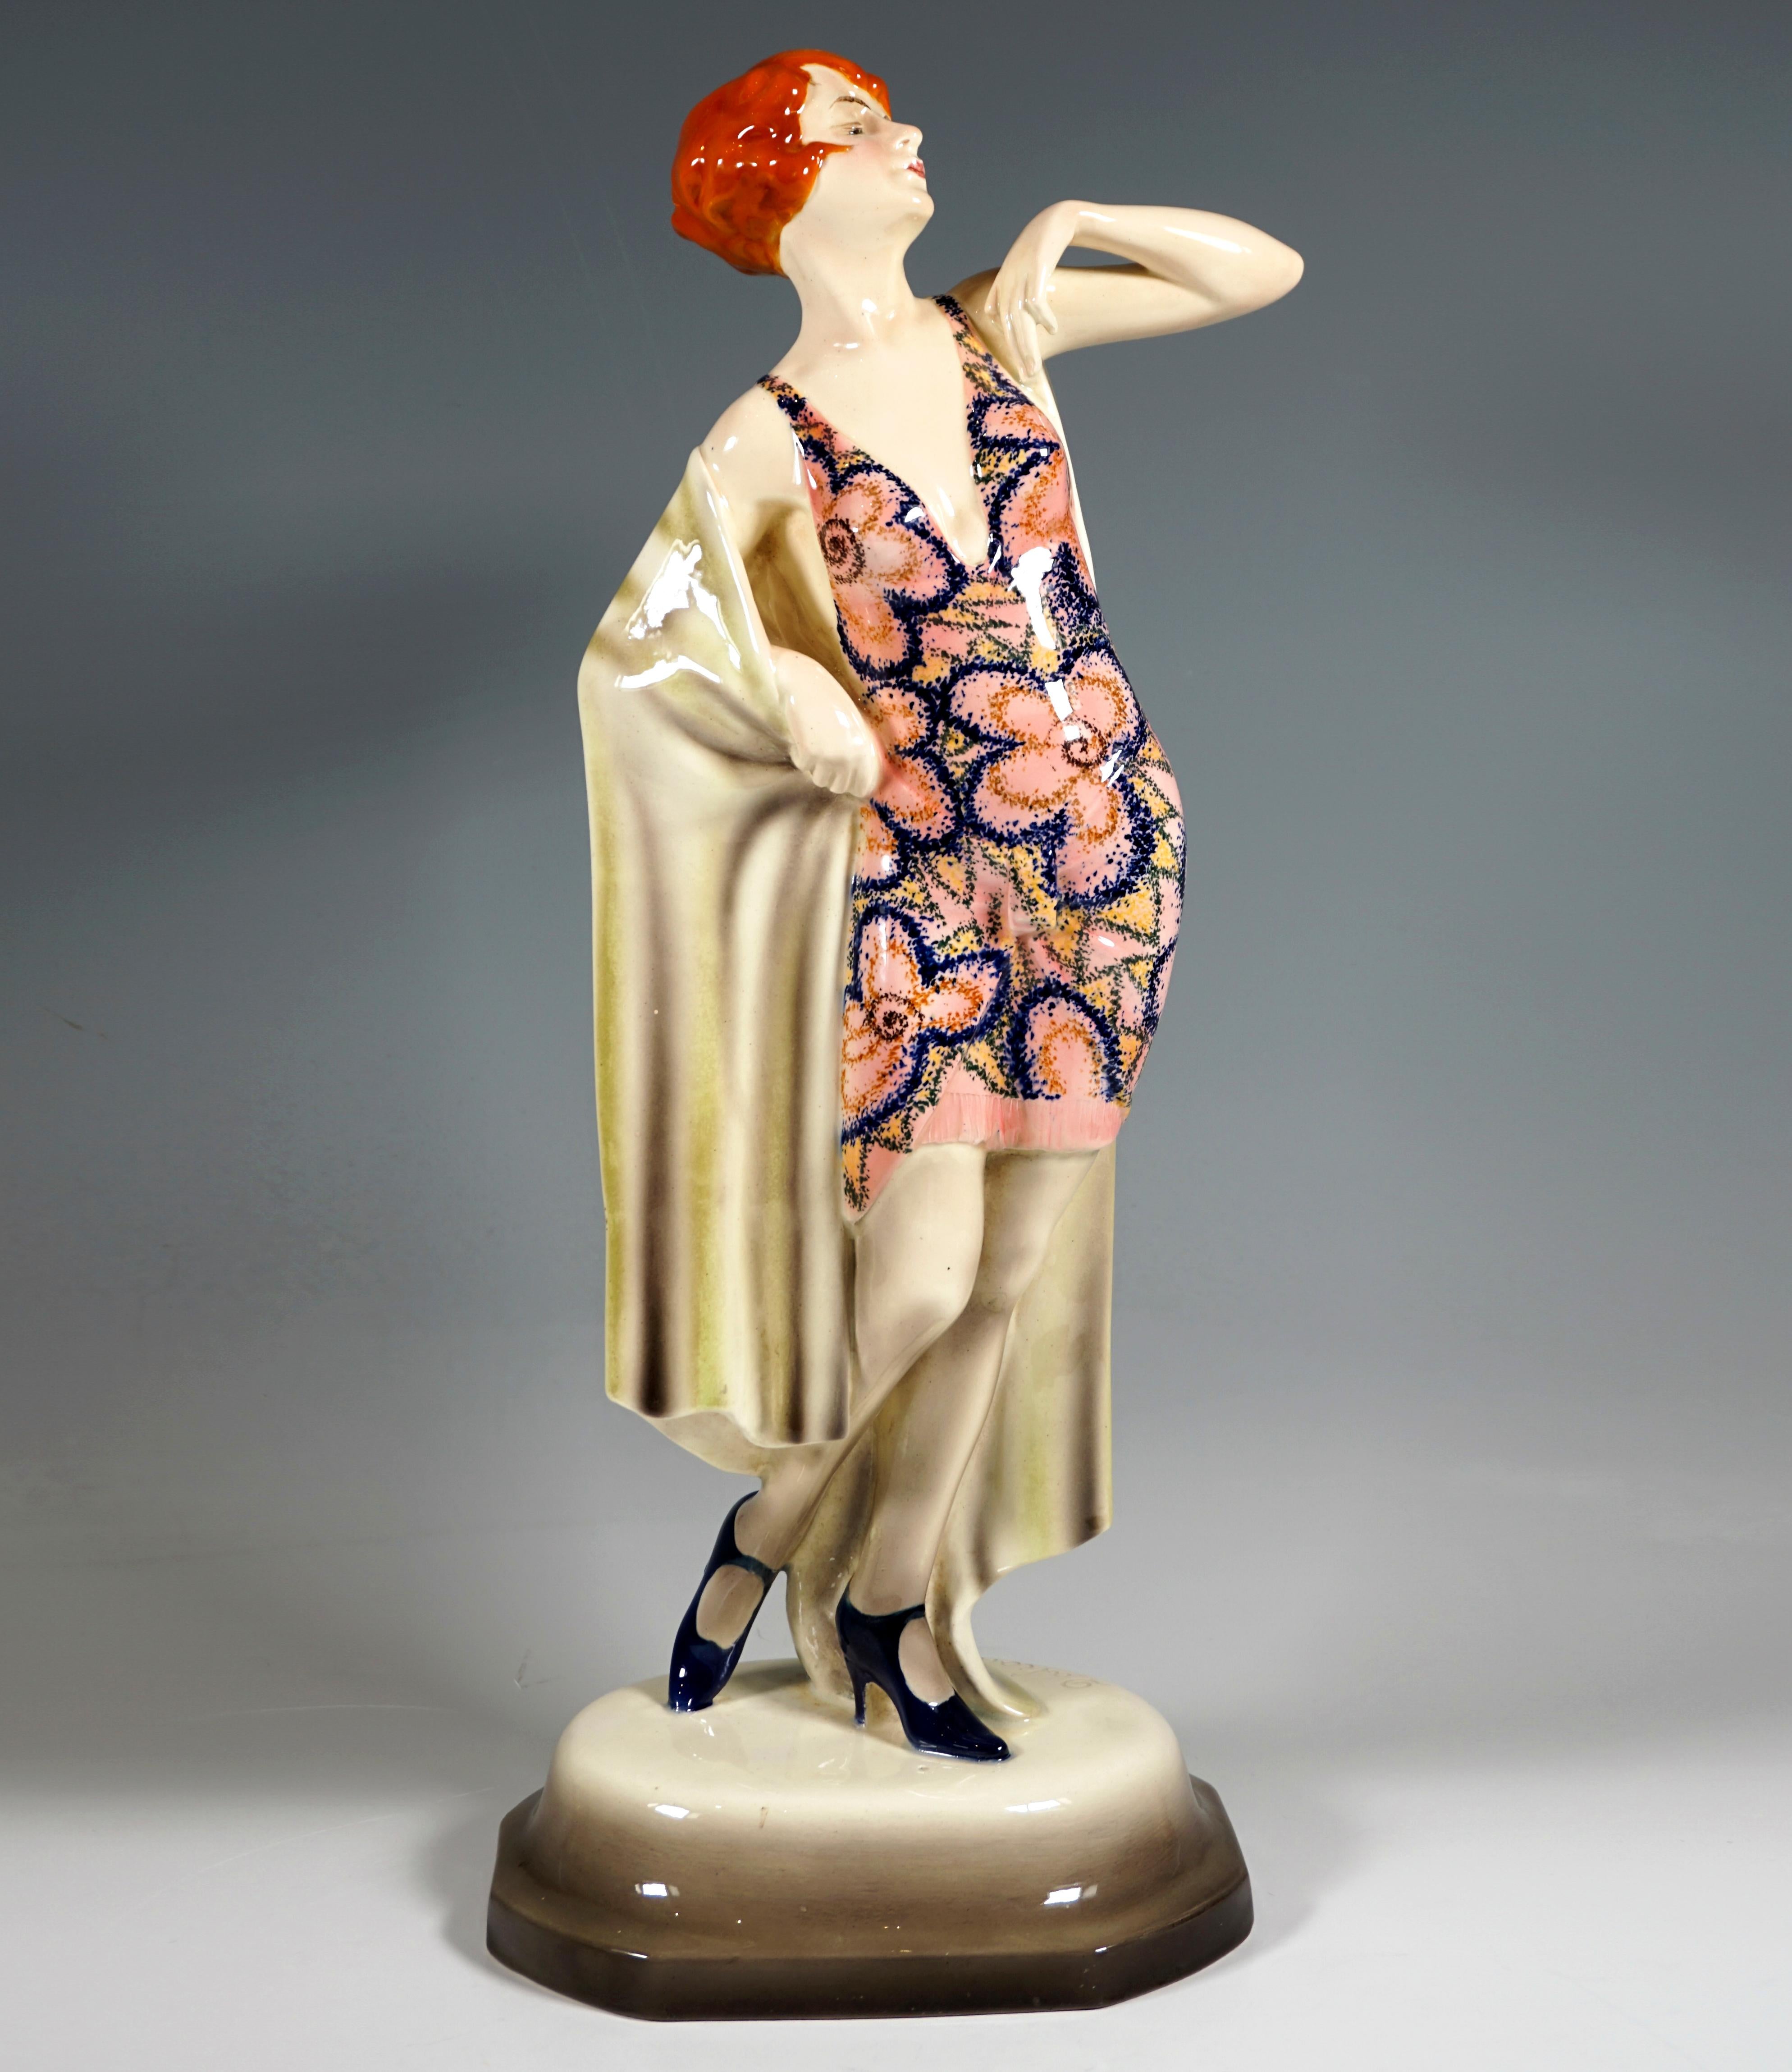 Seltene große Goldscheider Art-Déco-Keramikfigur aus den 1920er Jahren:
Junge Dame mit Kurzhaarfrisur in einem kurzen, tief ausgeschnittenen Trägerkleid mit großem Blumenschmuck, lasziv und selbstbewusst posierend: erhobener Kopf mit geschlossenen